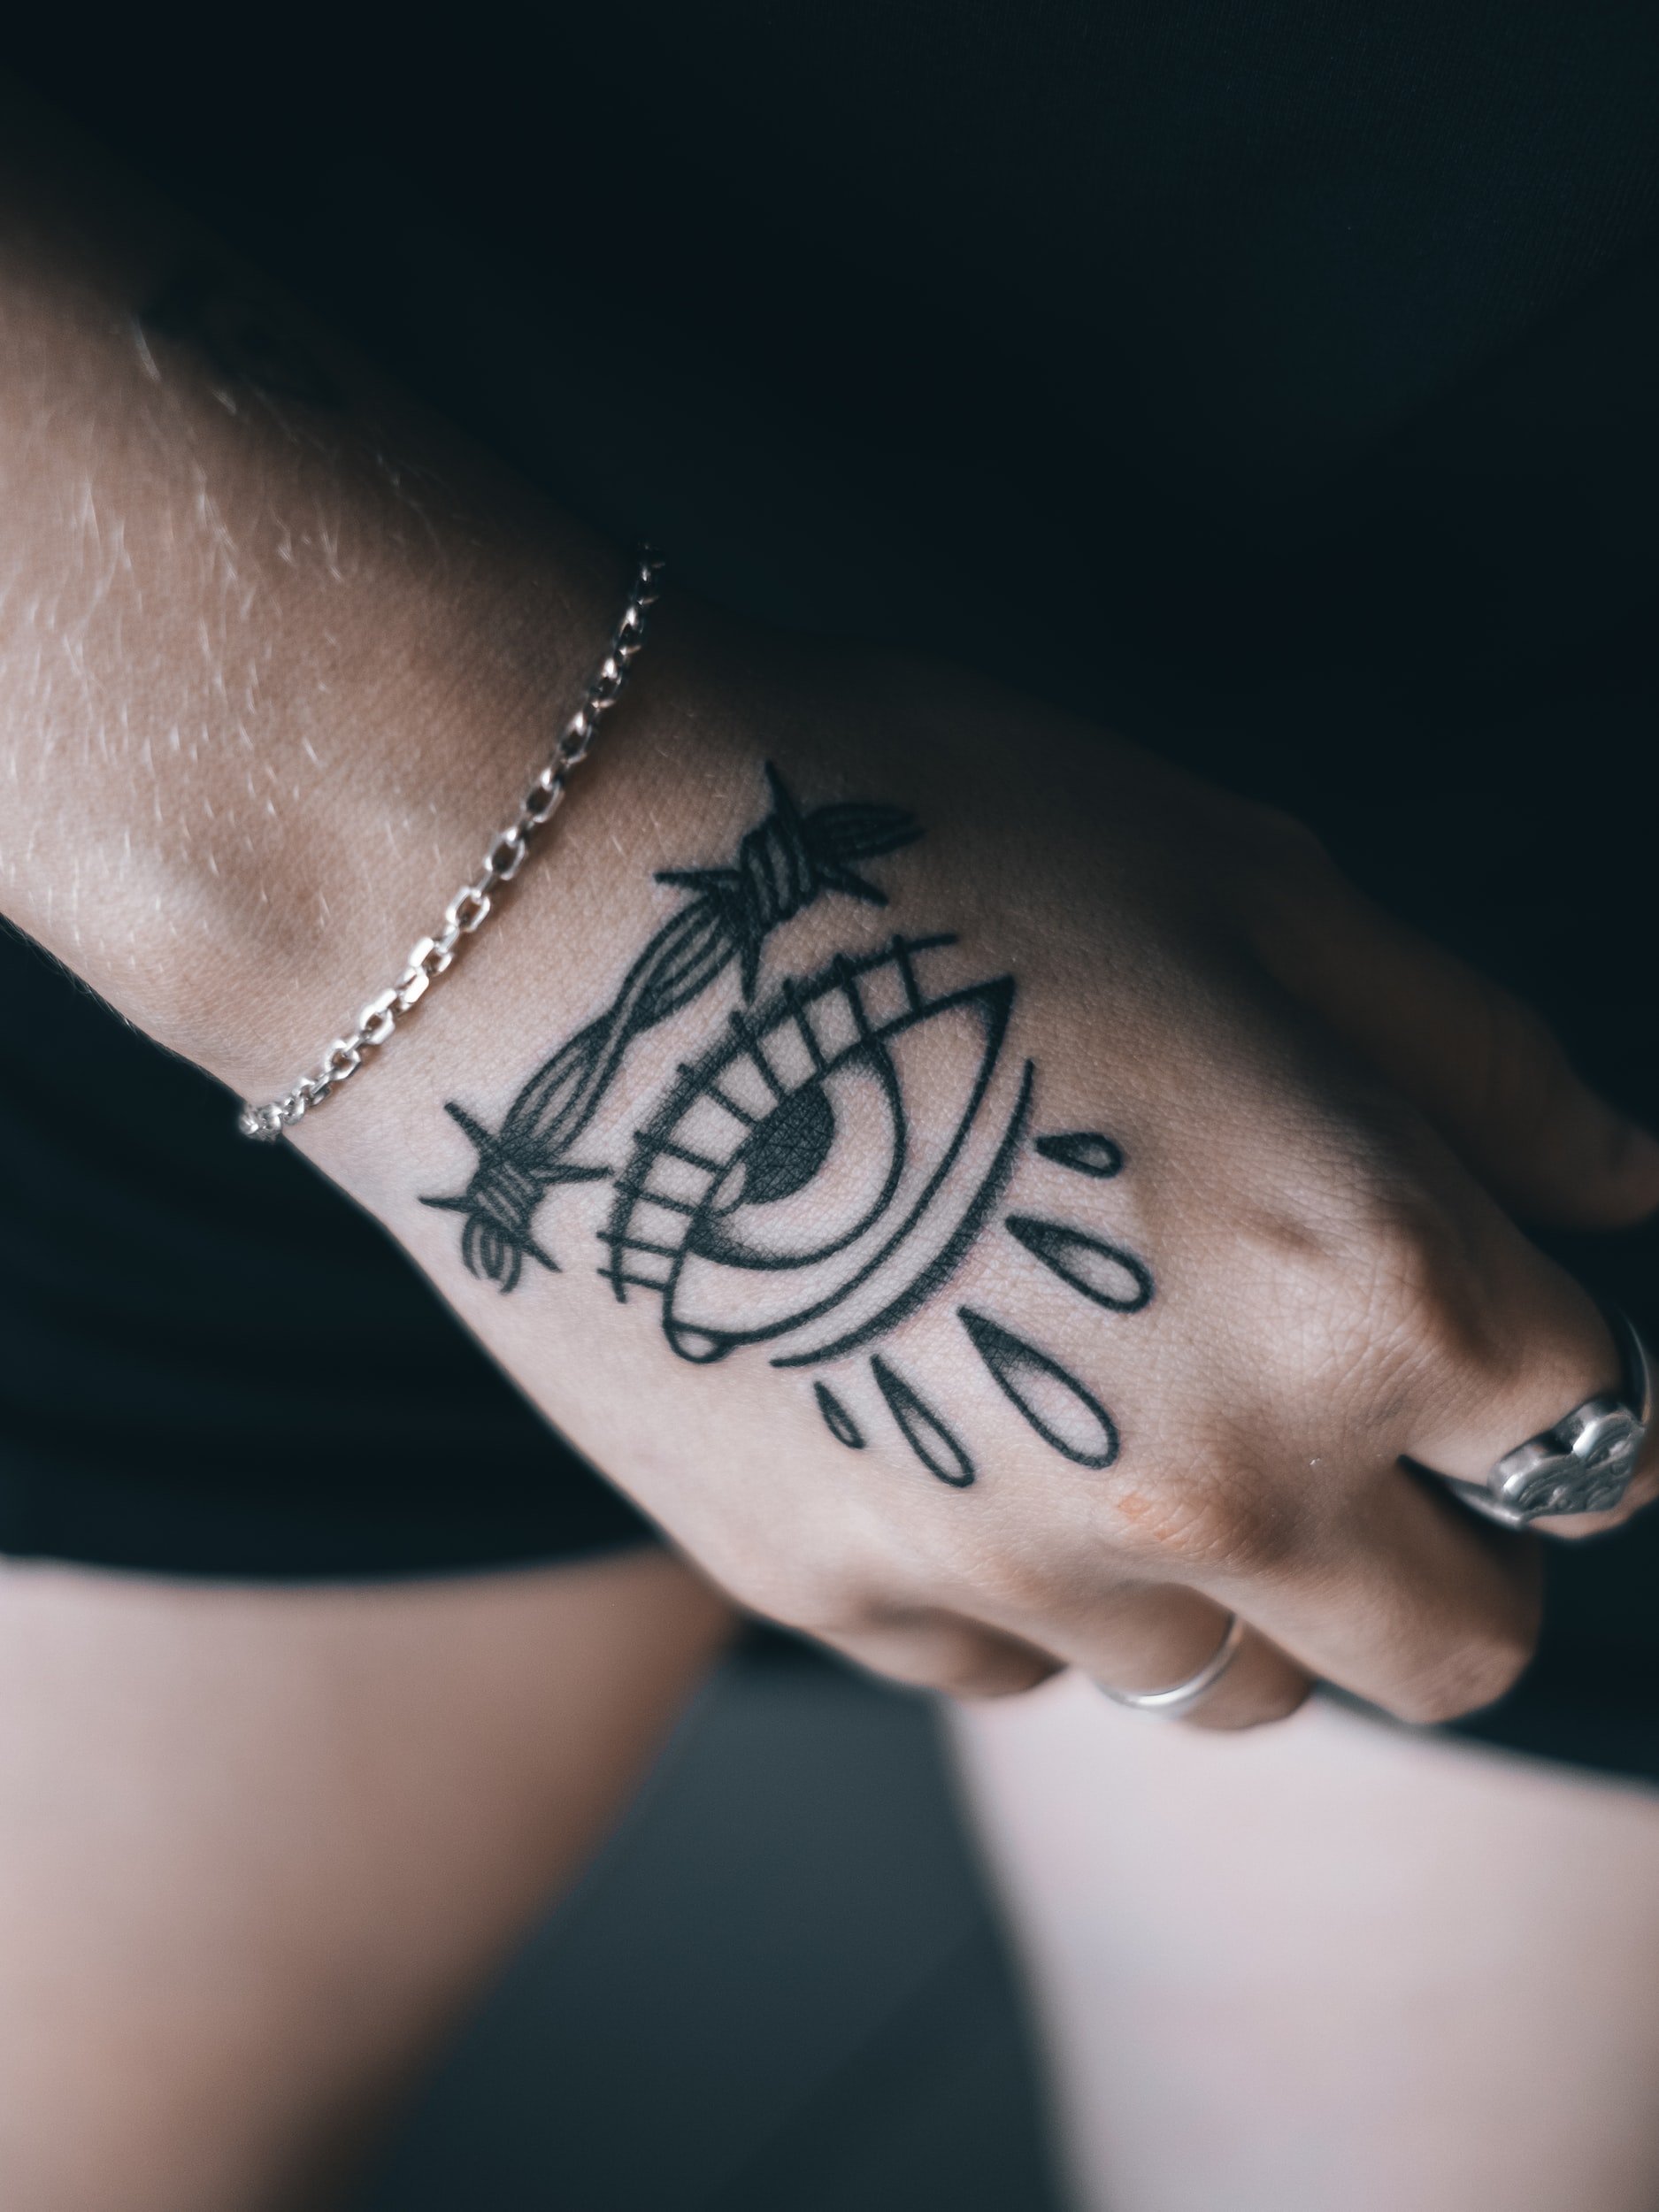 Risks of Eyeball Tattoos - Vision Center